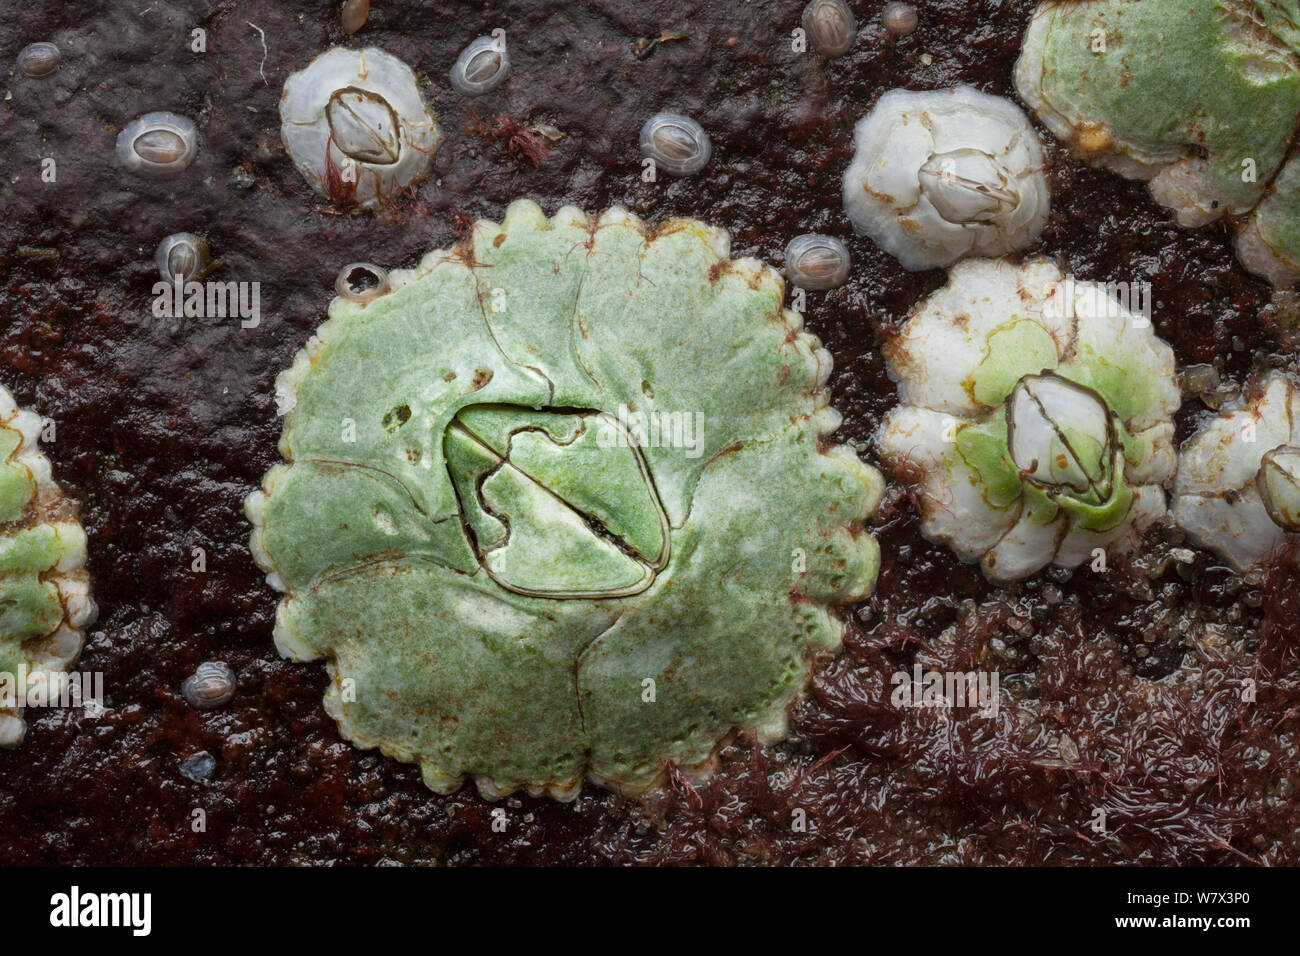 Acorn barnacle (Semibalanus balanoides) Île de Skye, Hébrides intérieures, Ecosse, Royaume-Uni. Avril. Banque D'Images